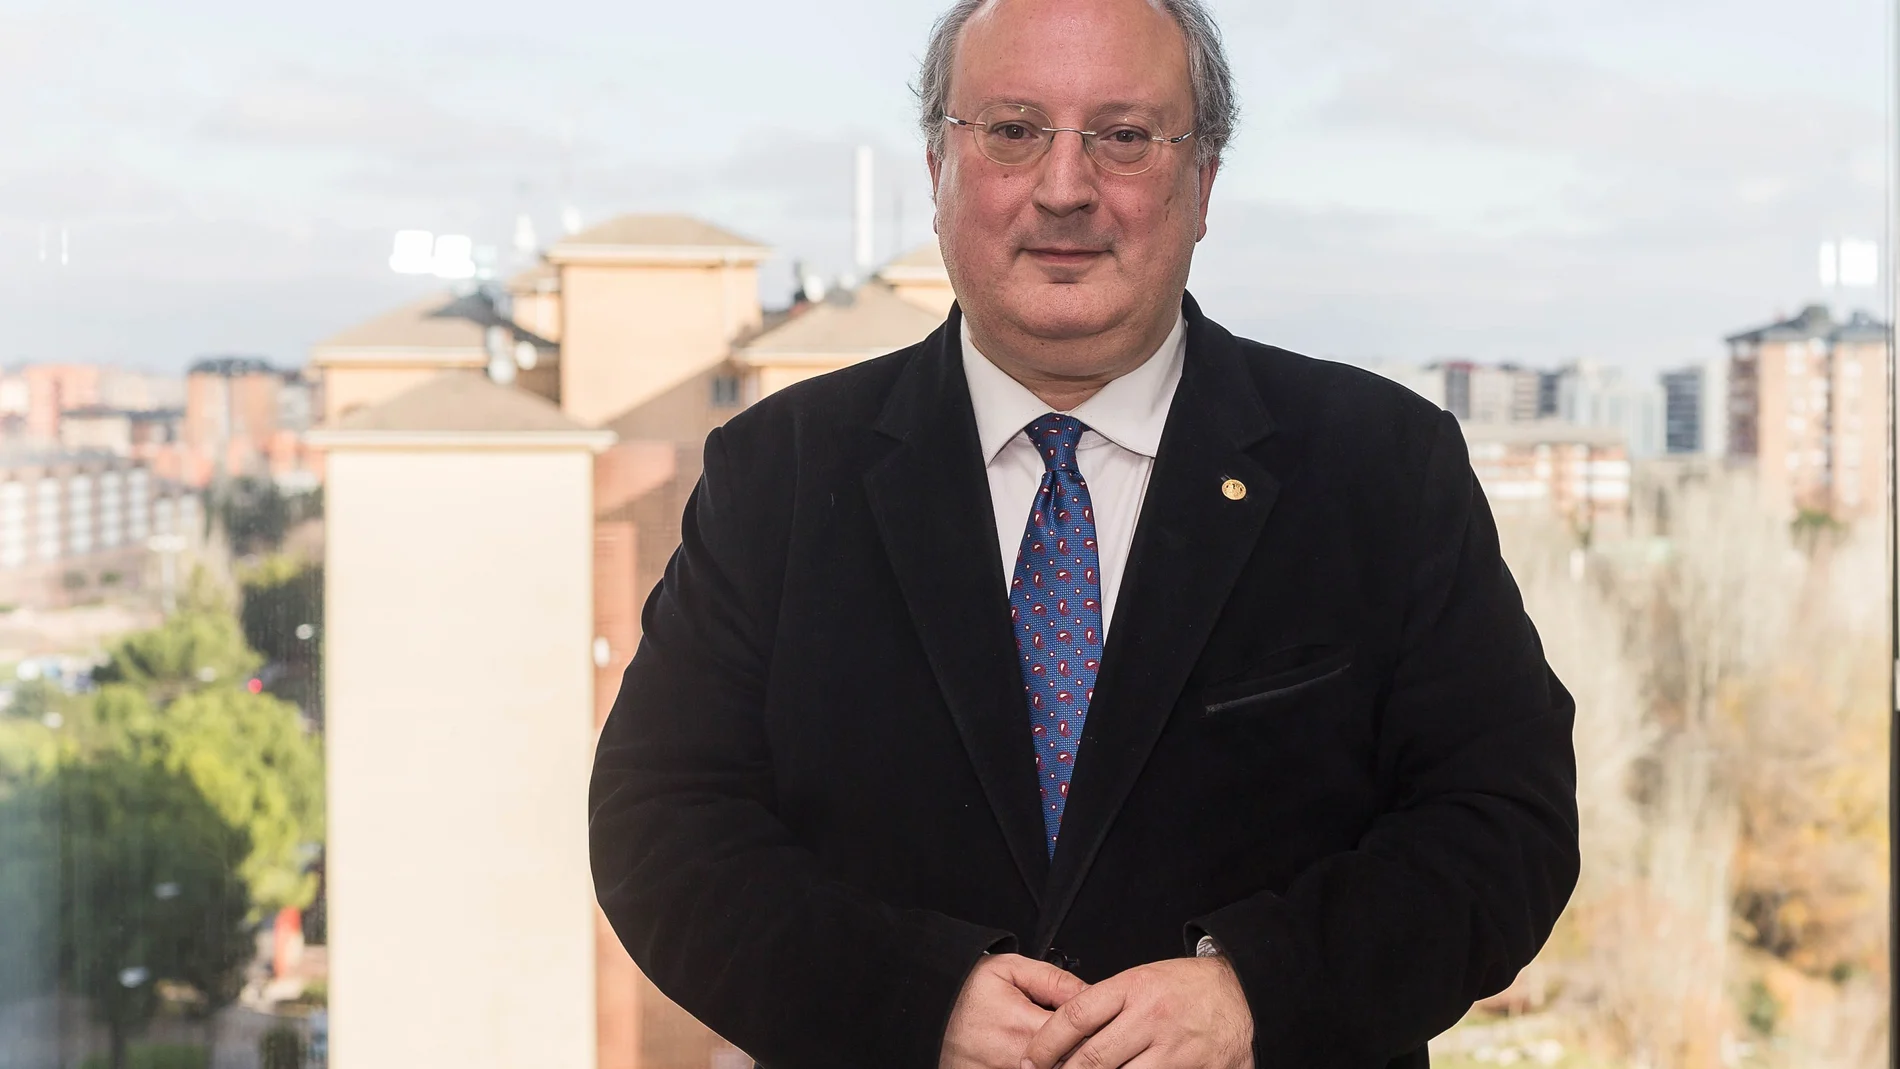 El presidente del Consejo Económico y Social de Castilla y León, Enrique Cabero Morán